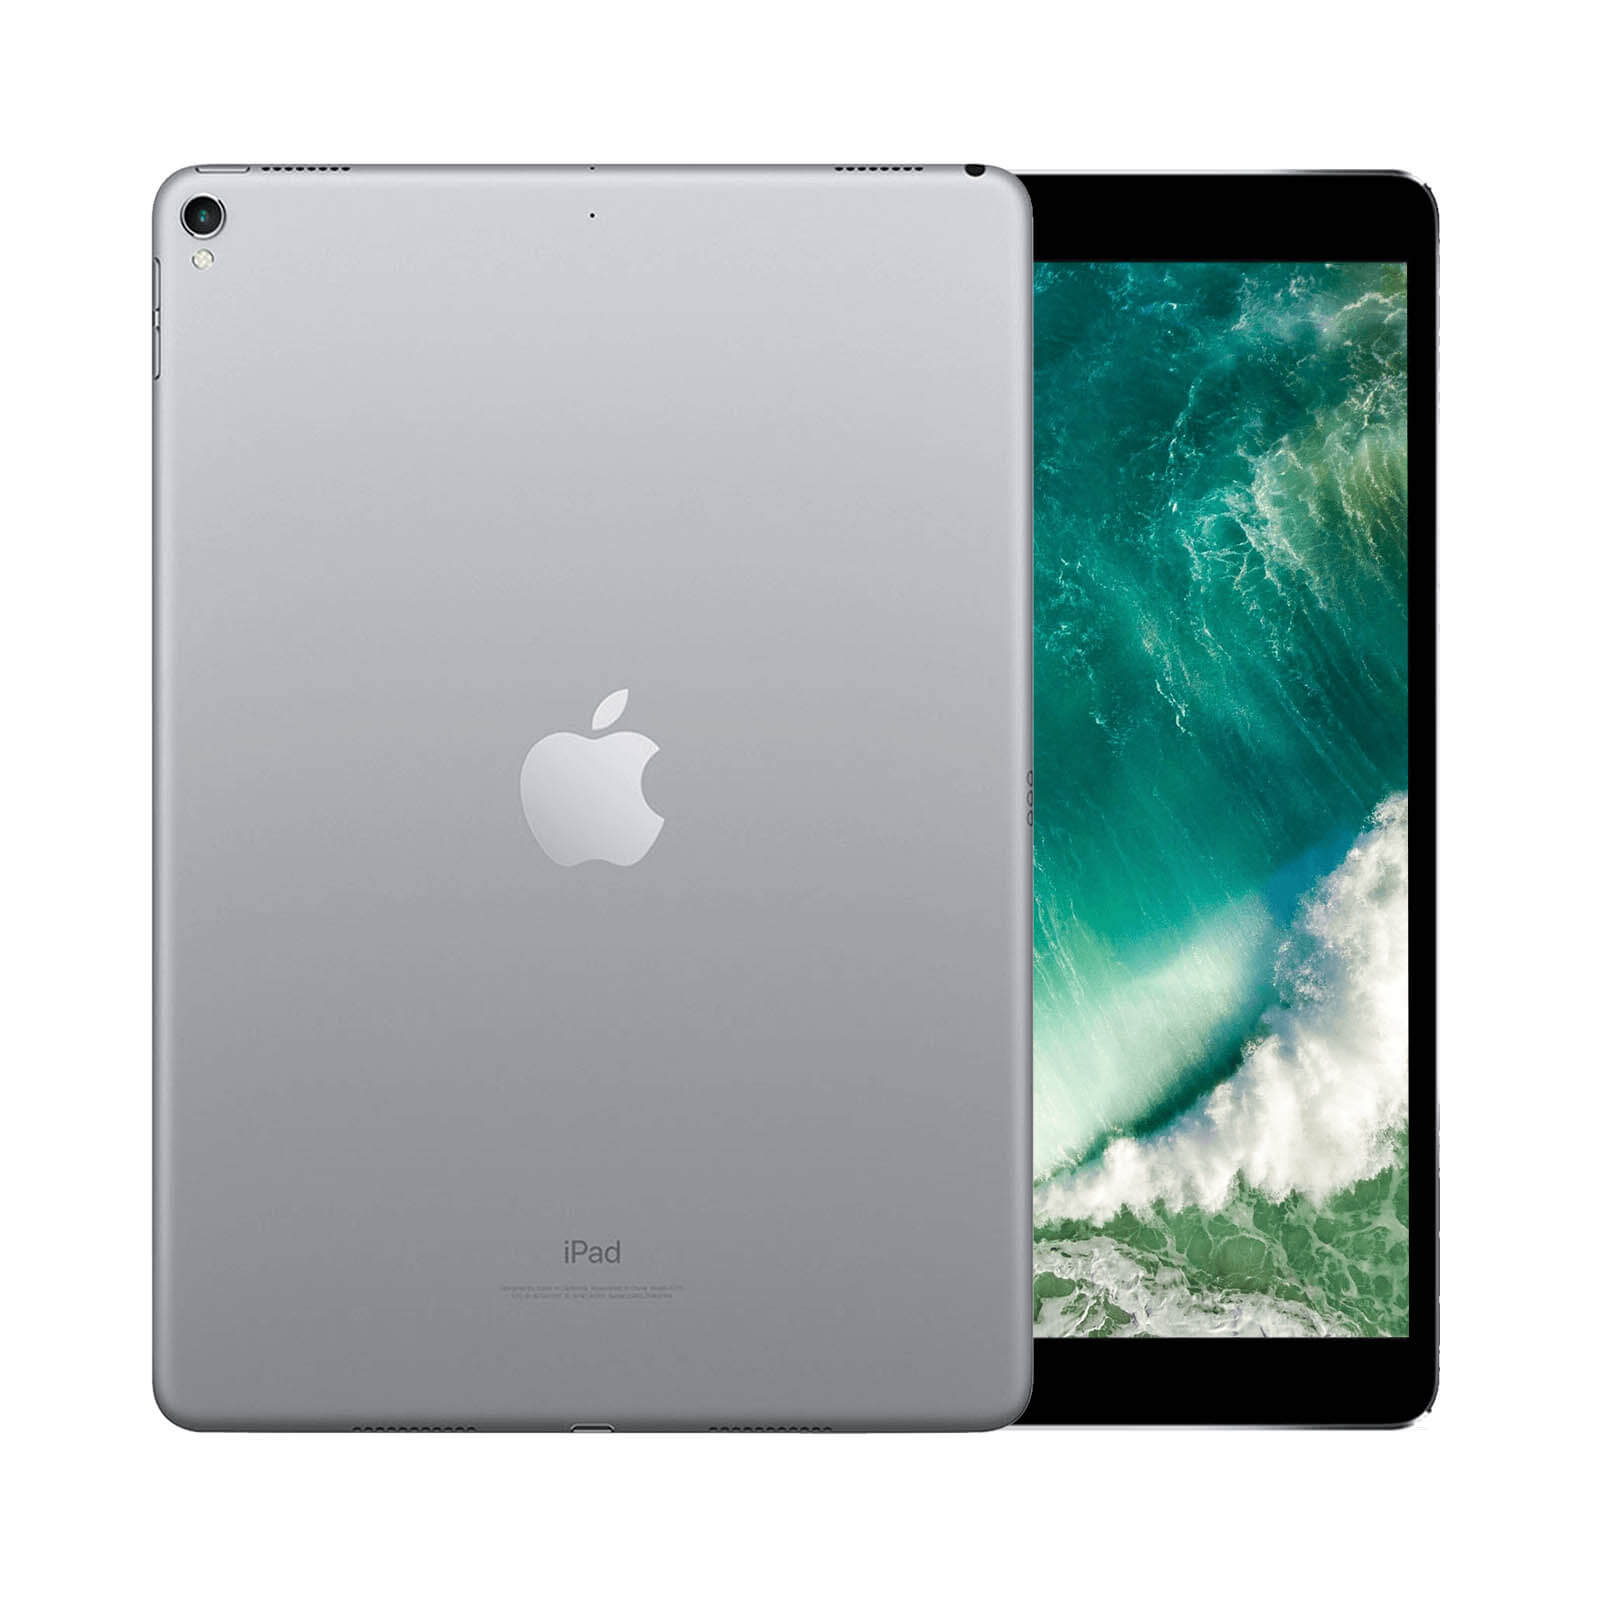 iPad Pro 10.5 Inch 64GB Gold Good - WiFi